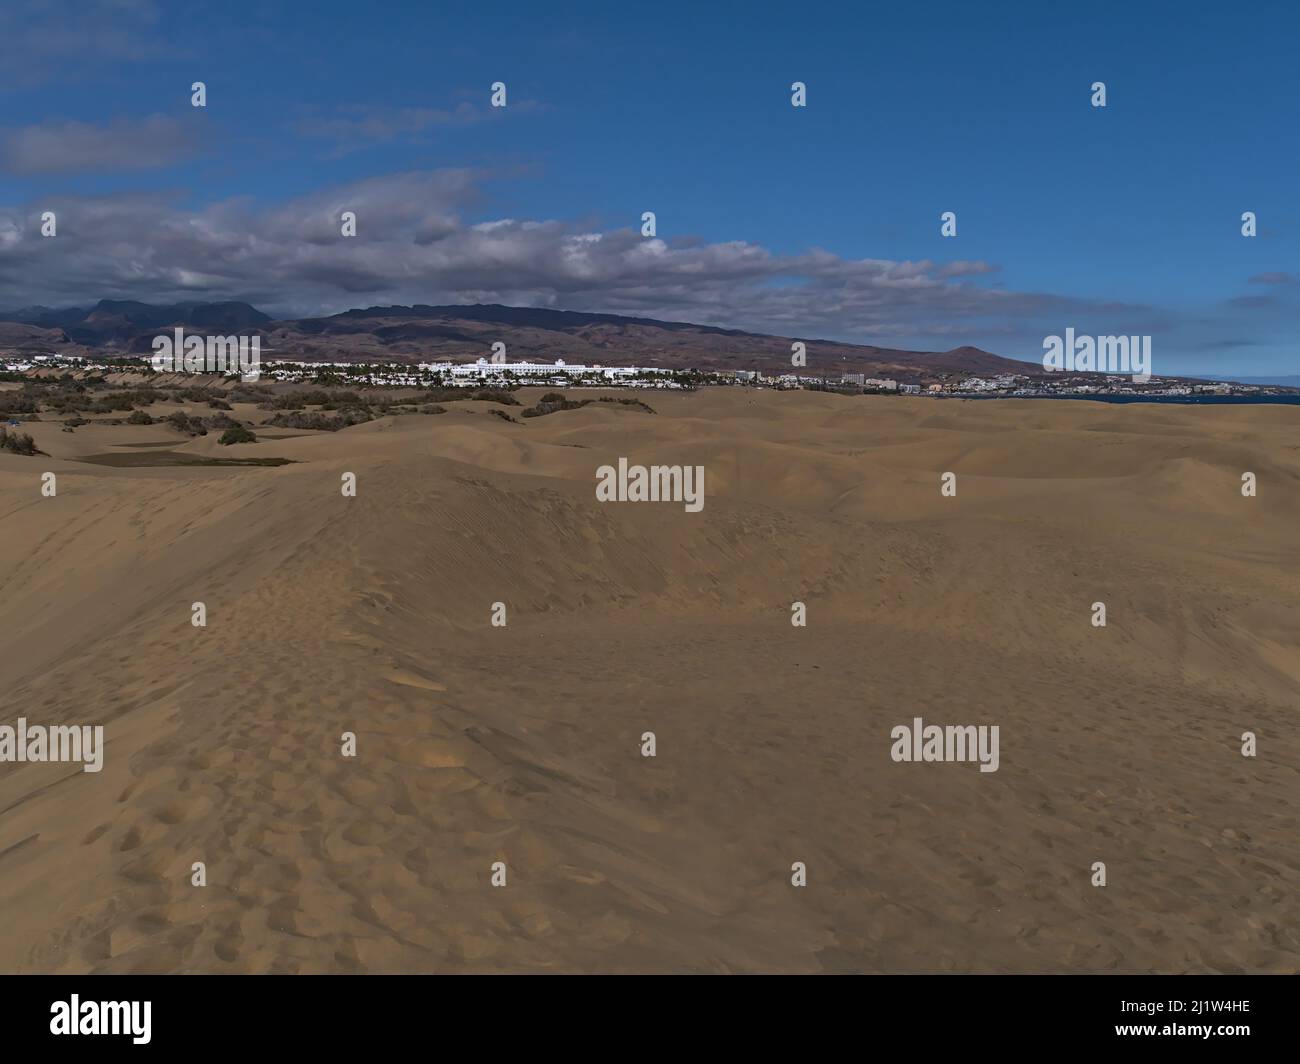 Vue de la réserve naturelle populaire Dunas de Maspalomas dans le sud de l'île Gran Canaria, îles Canaries, Espagne sur la côte atlantique avec des dunes de sable. Banque D'Images